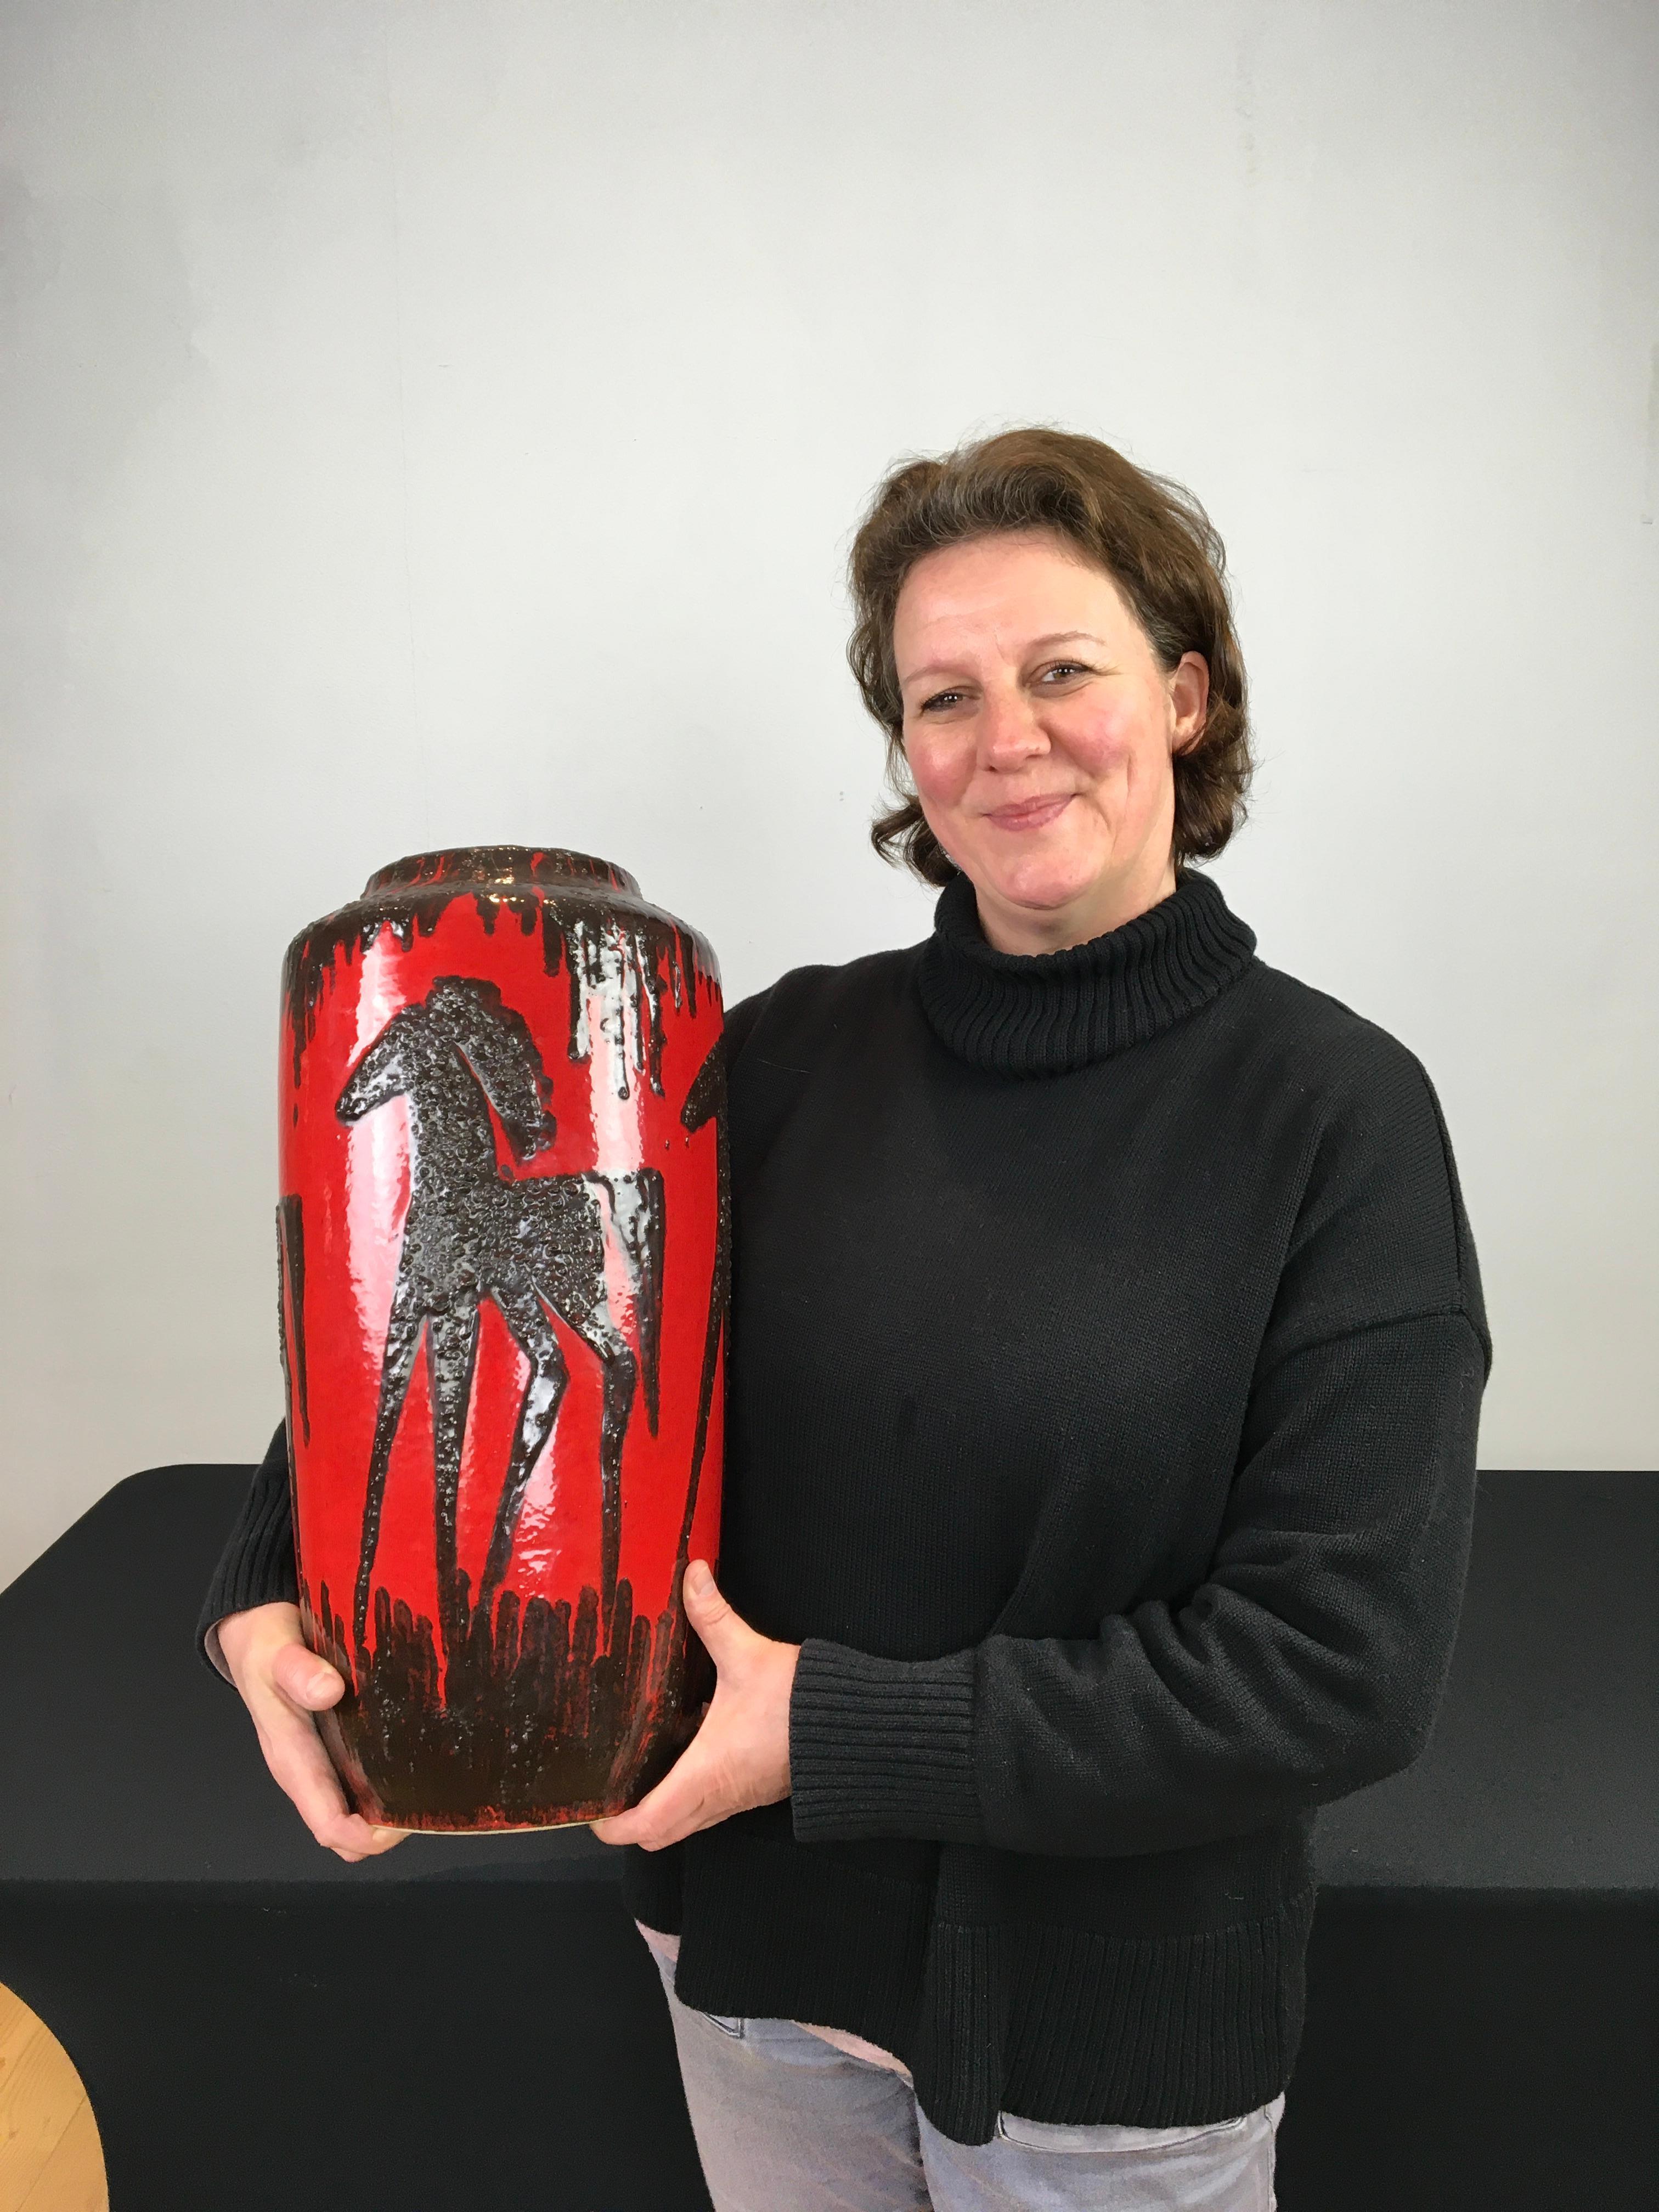 1960er Red Fat Lava Vase mit Pferden.
Diese Vase aus westdeutscher Kunstkeramik von Scheurich 
hat die Farbe Rot mit dunkelbraunen, schwarzen Pferden an.
Das Design dieser roten Vintage-Vase ist geprägt oder reliefartig.
Im Inneren der Vase schöne